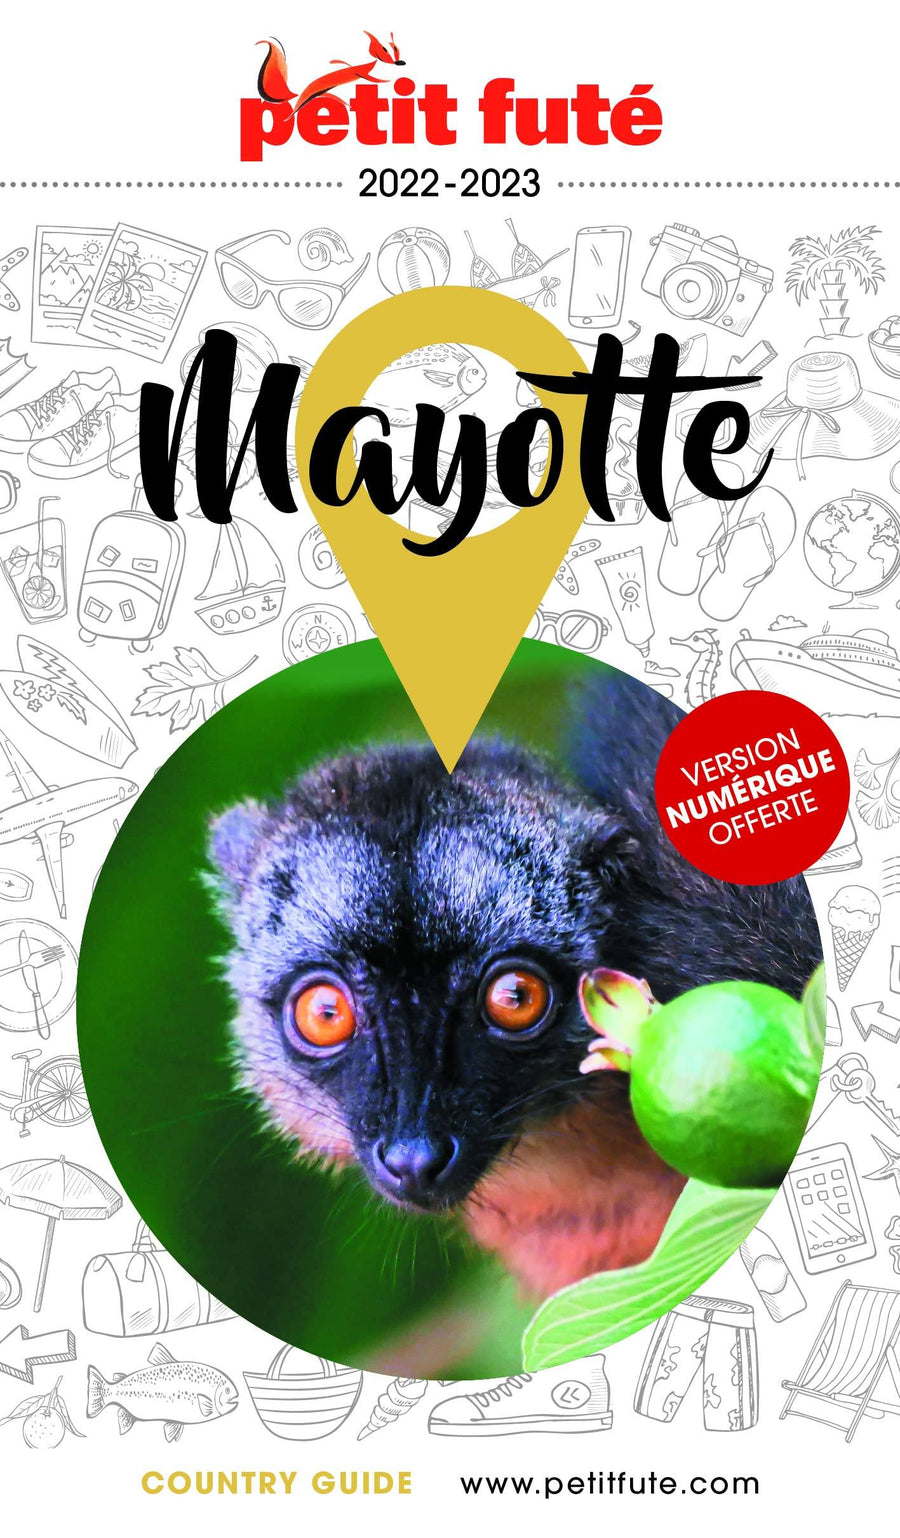 Guide de voyage - Mayotte 2022/23 | Petit Futé guide de voyage Petit Futé 